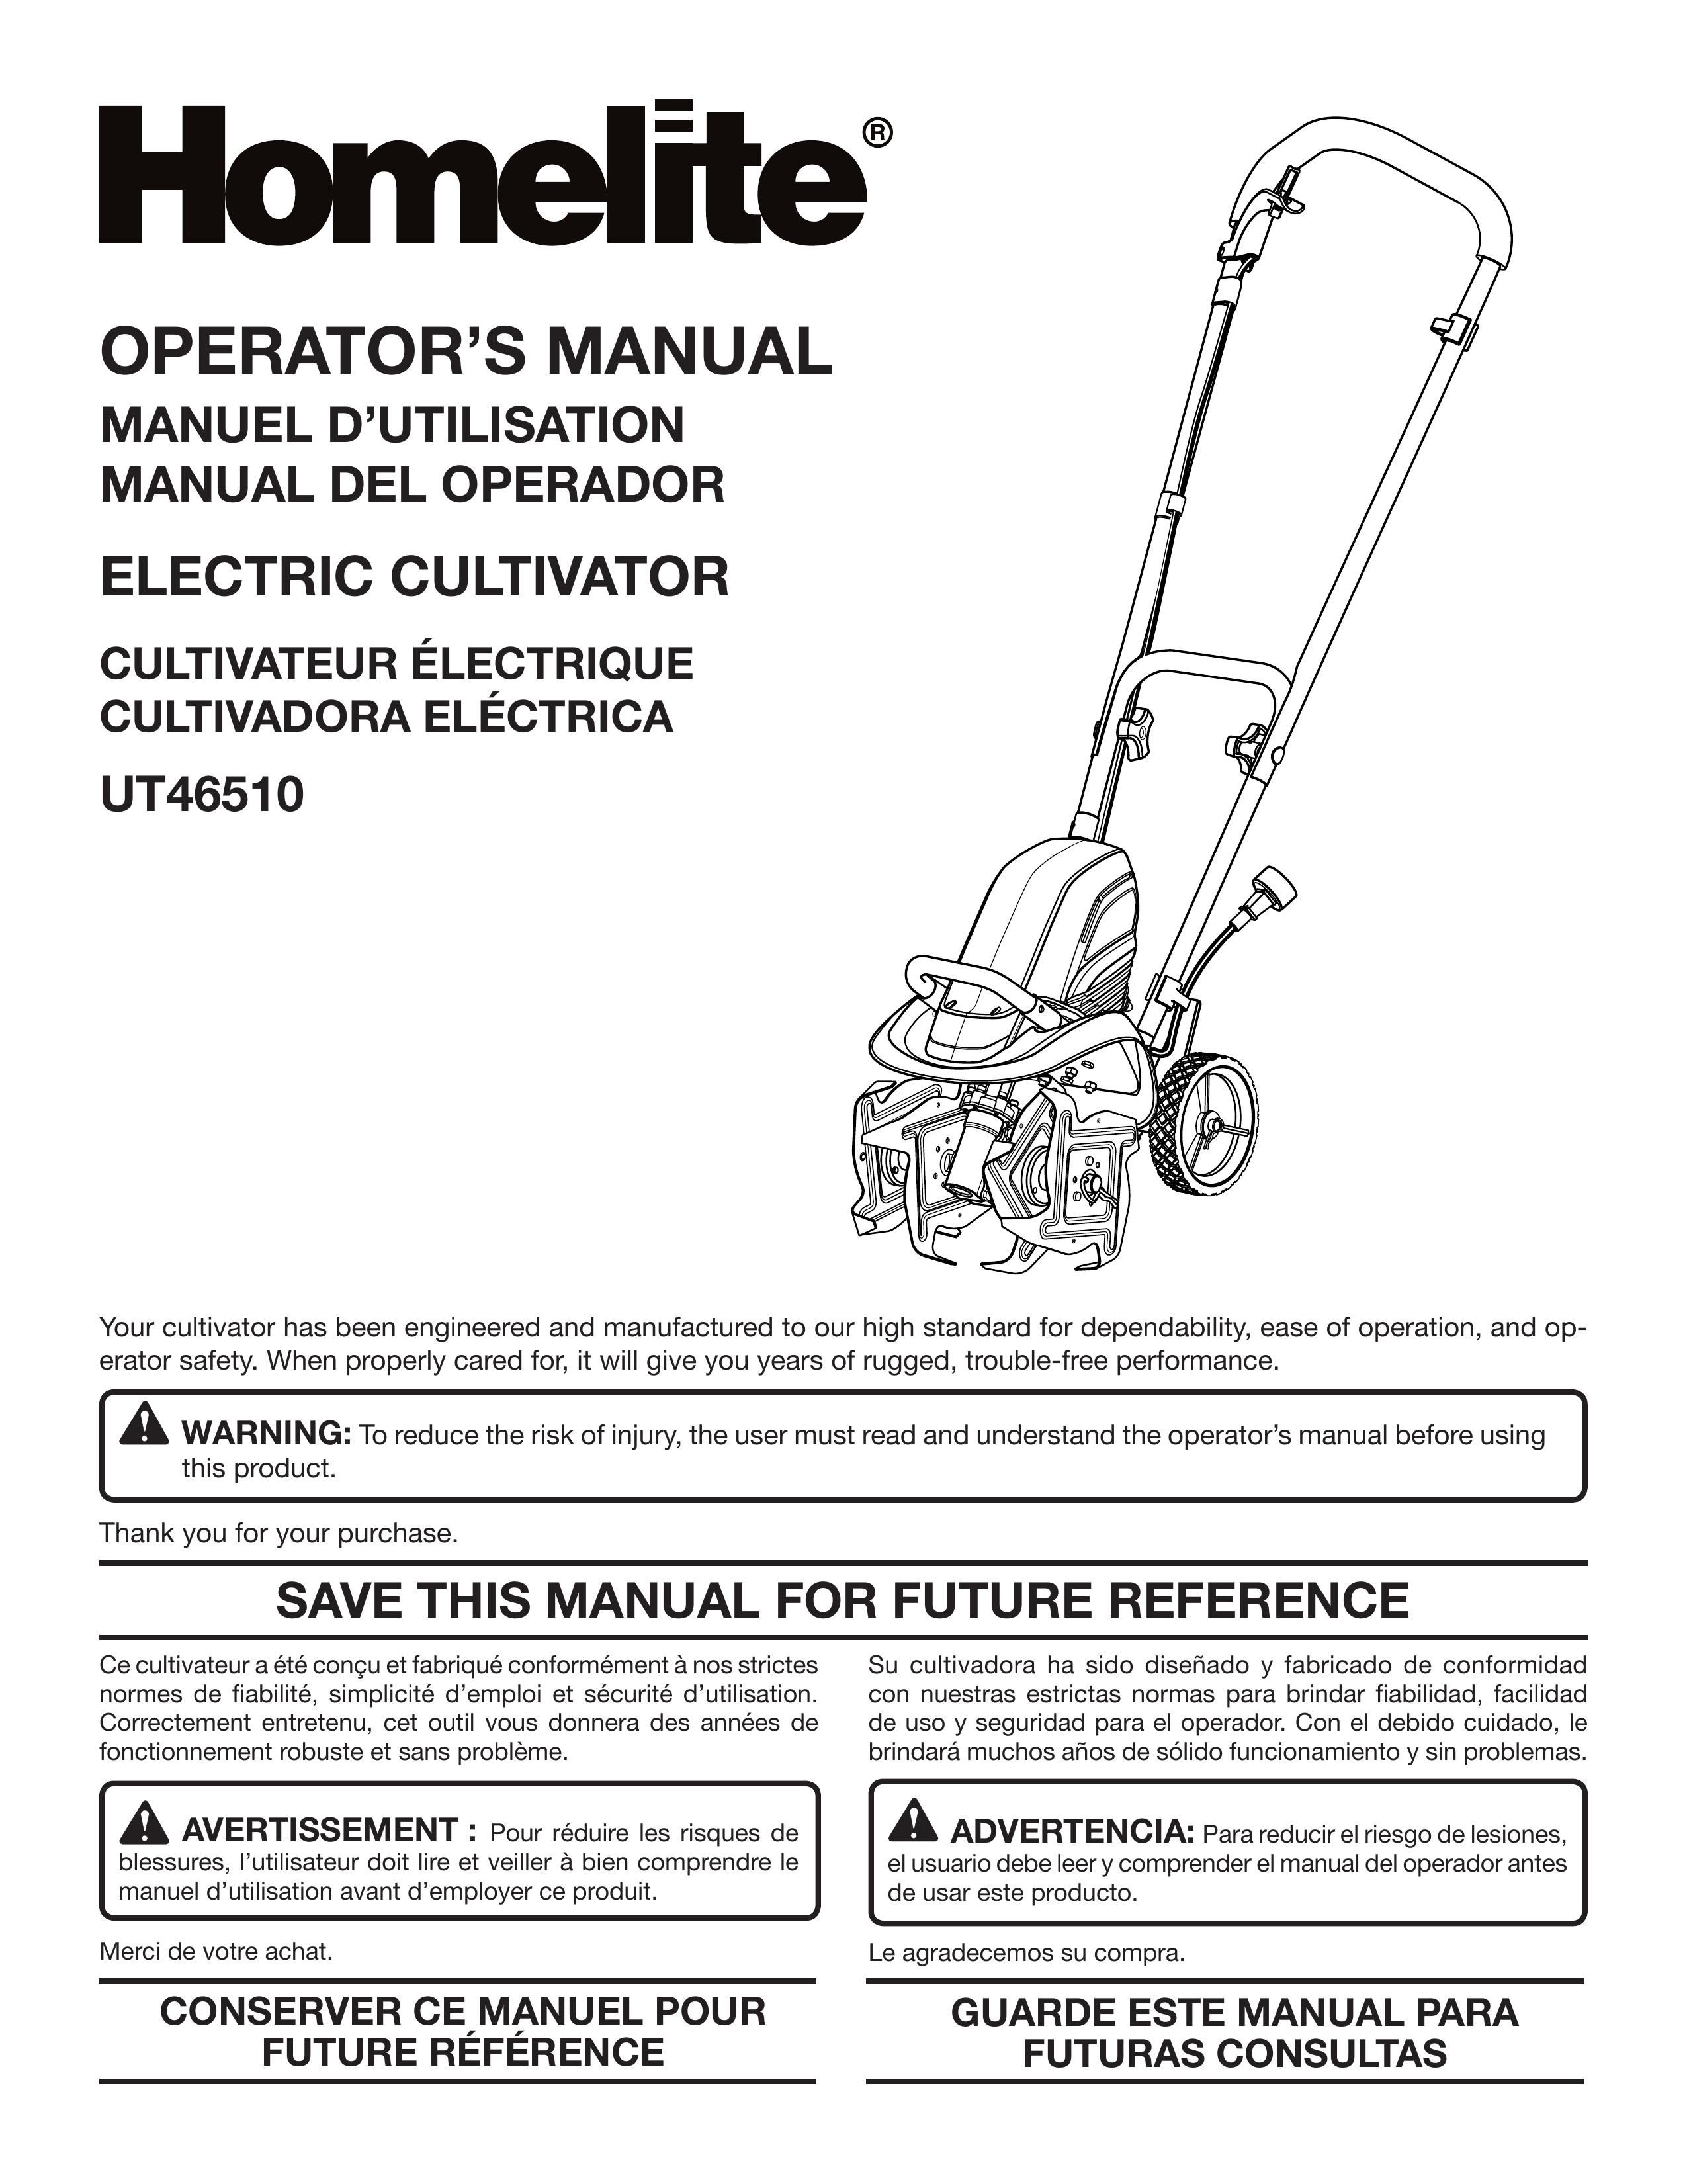 Homelite UT46510 Cultivator User Manual